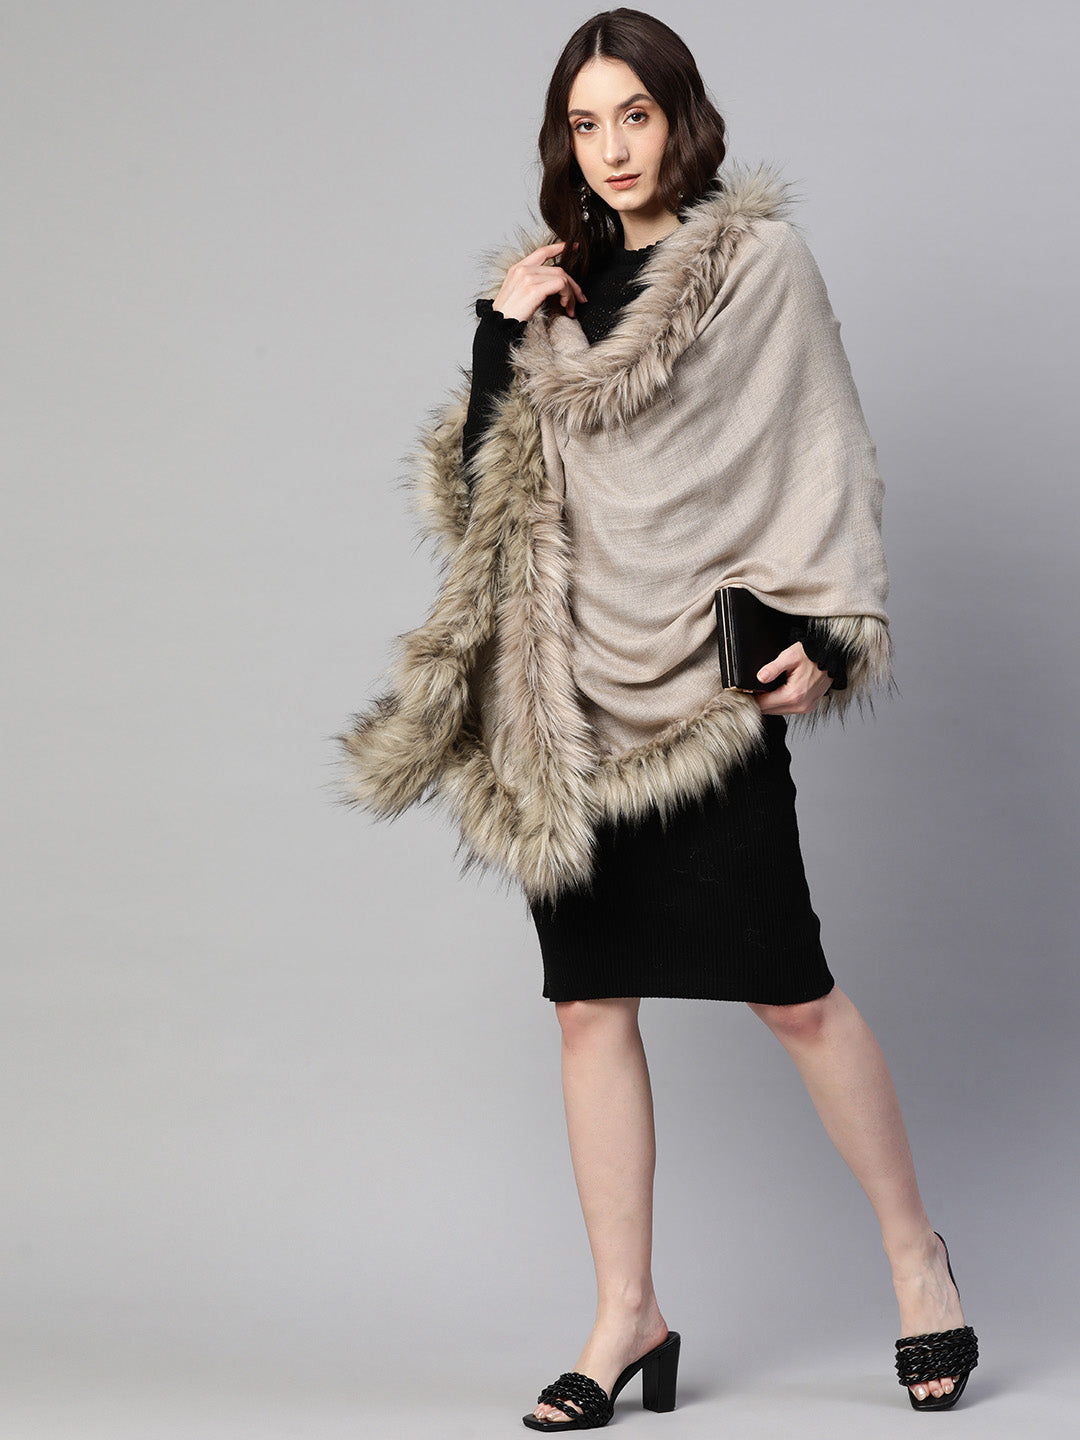 Wool shawl with fur, fur shawl online